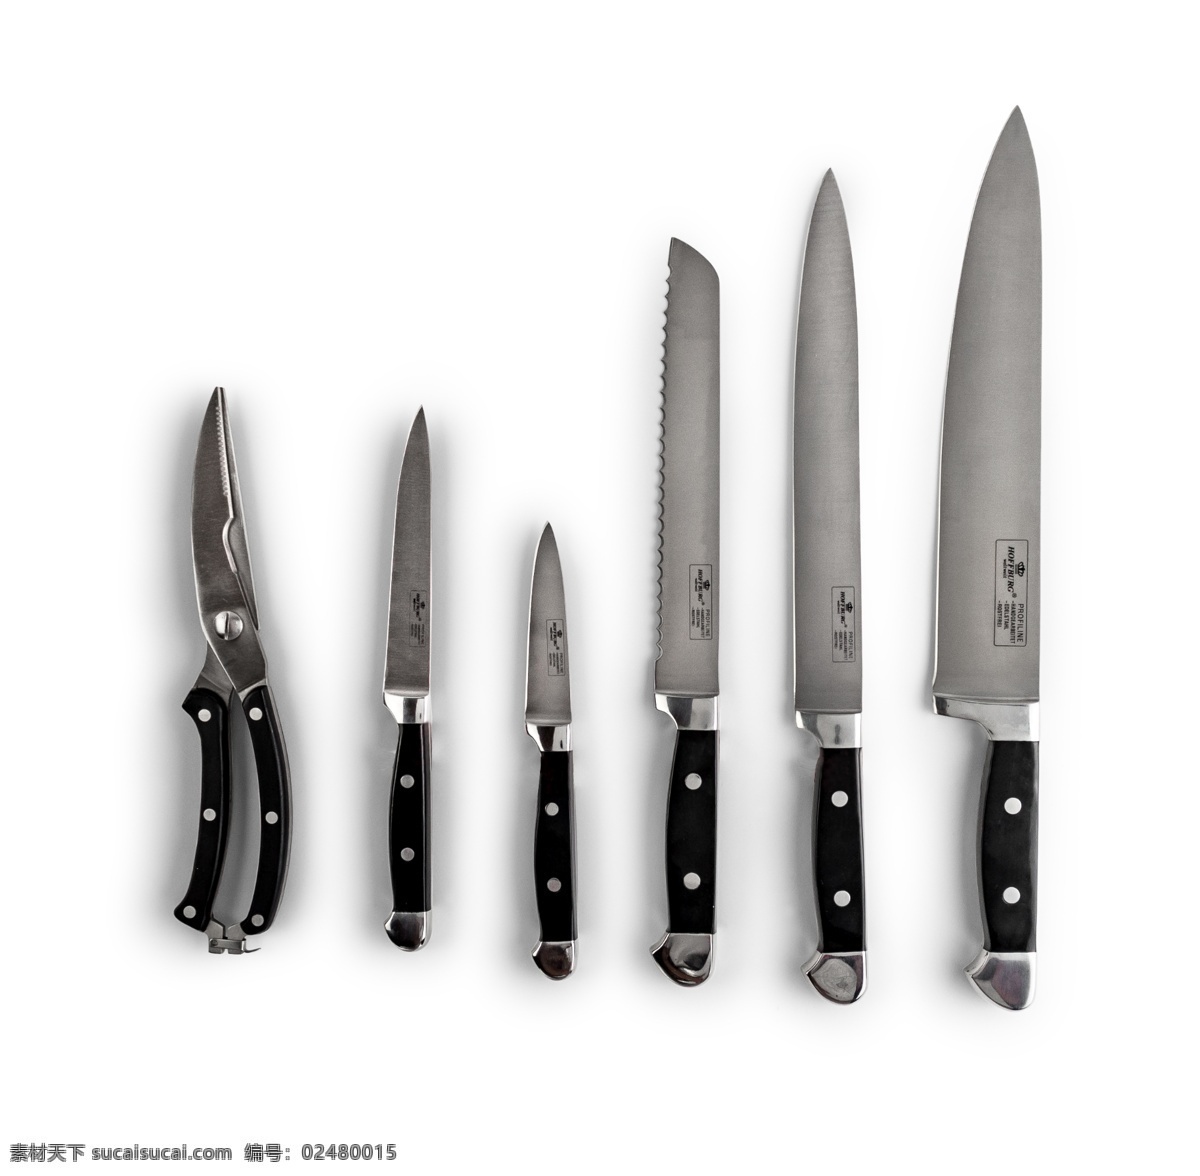 各种 不同 用途 现代 刀具 源文件 黑色 手柄 刀片 排列 装饰图案